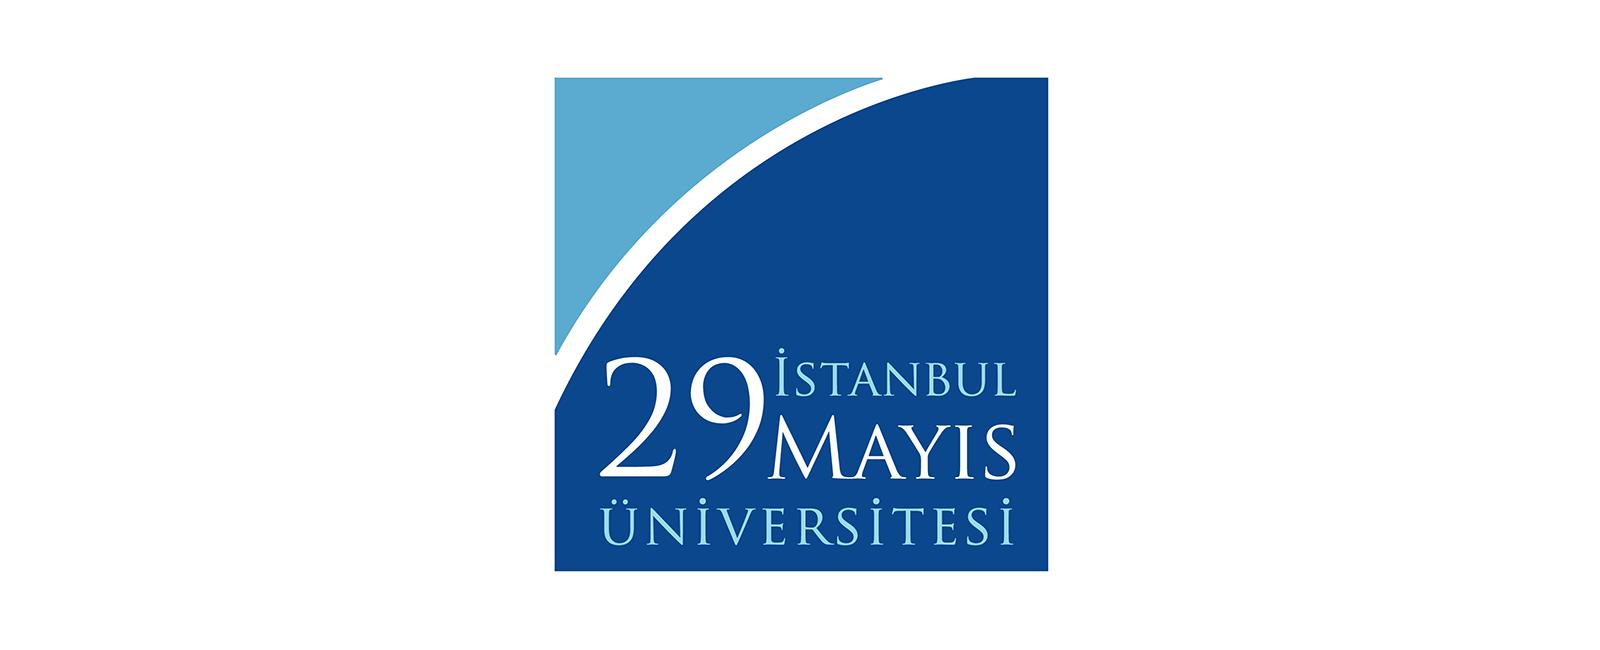 جامعة 29 مايو اسطنبول في اسطنبول